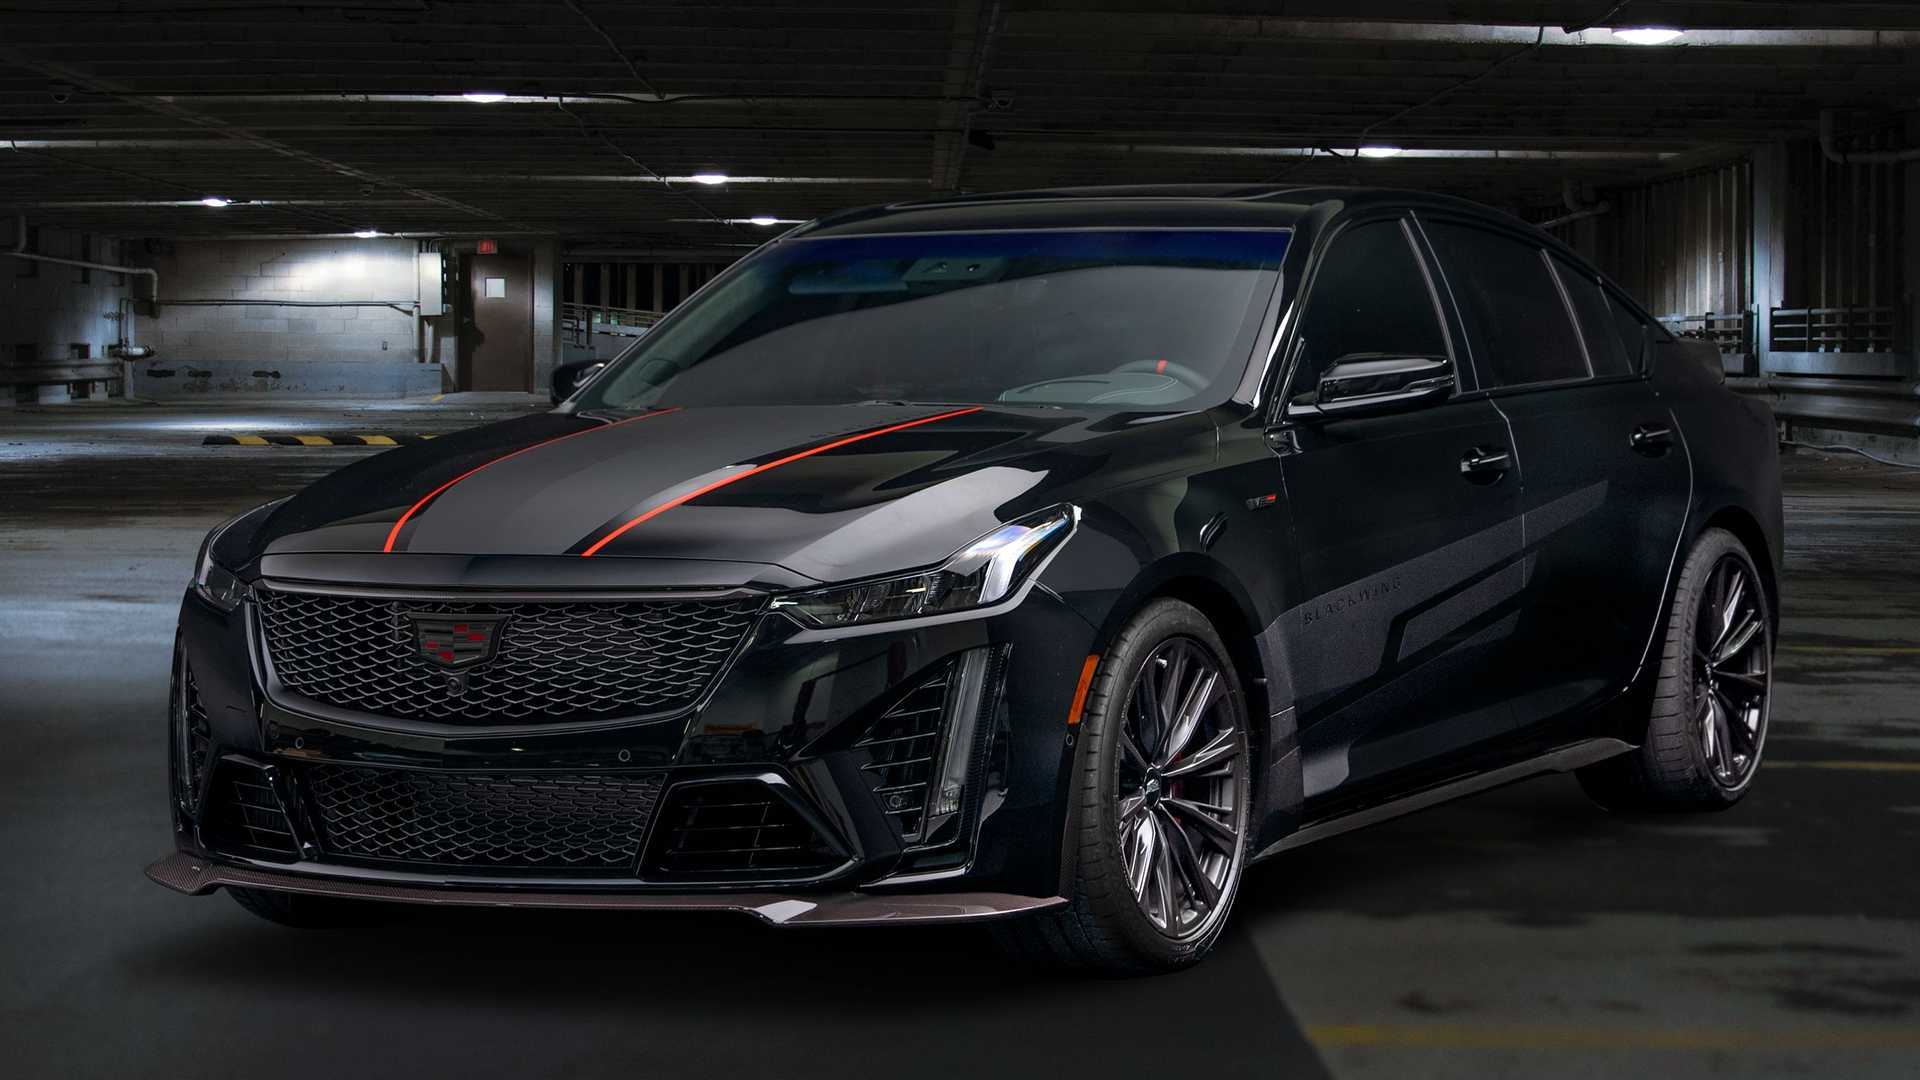 Tải ảnh xe Cadillac CT4-V sắc nét từng chi tiết 16